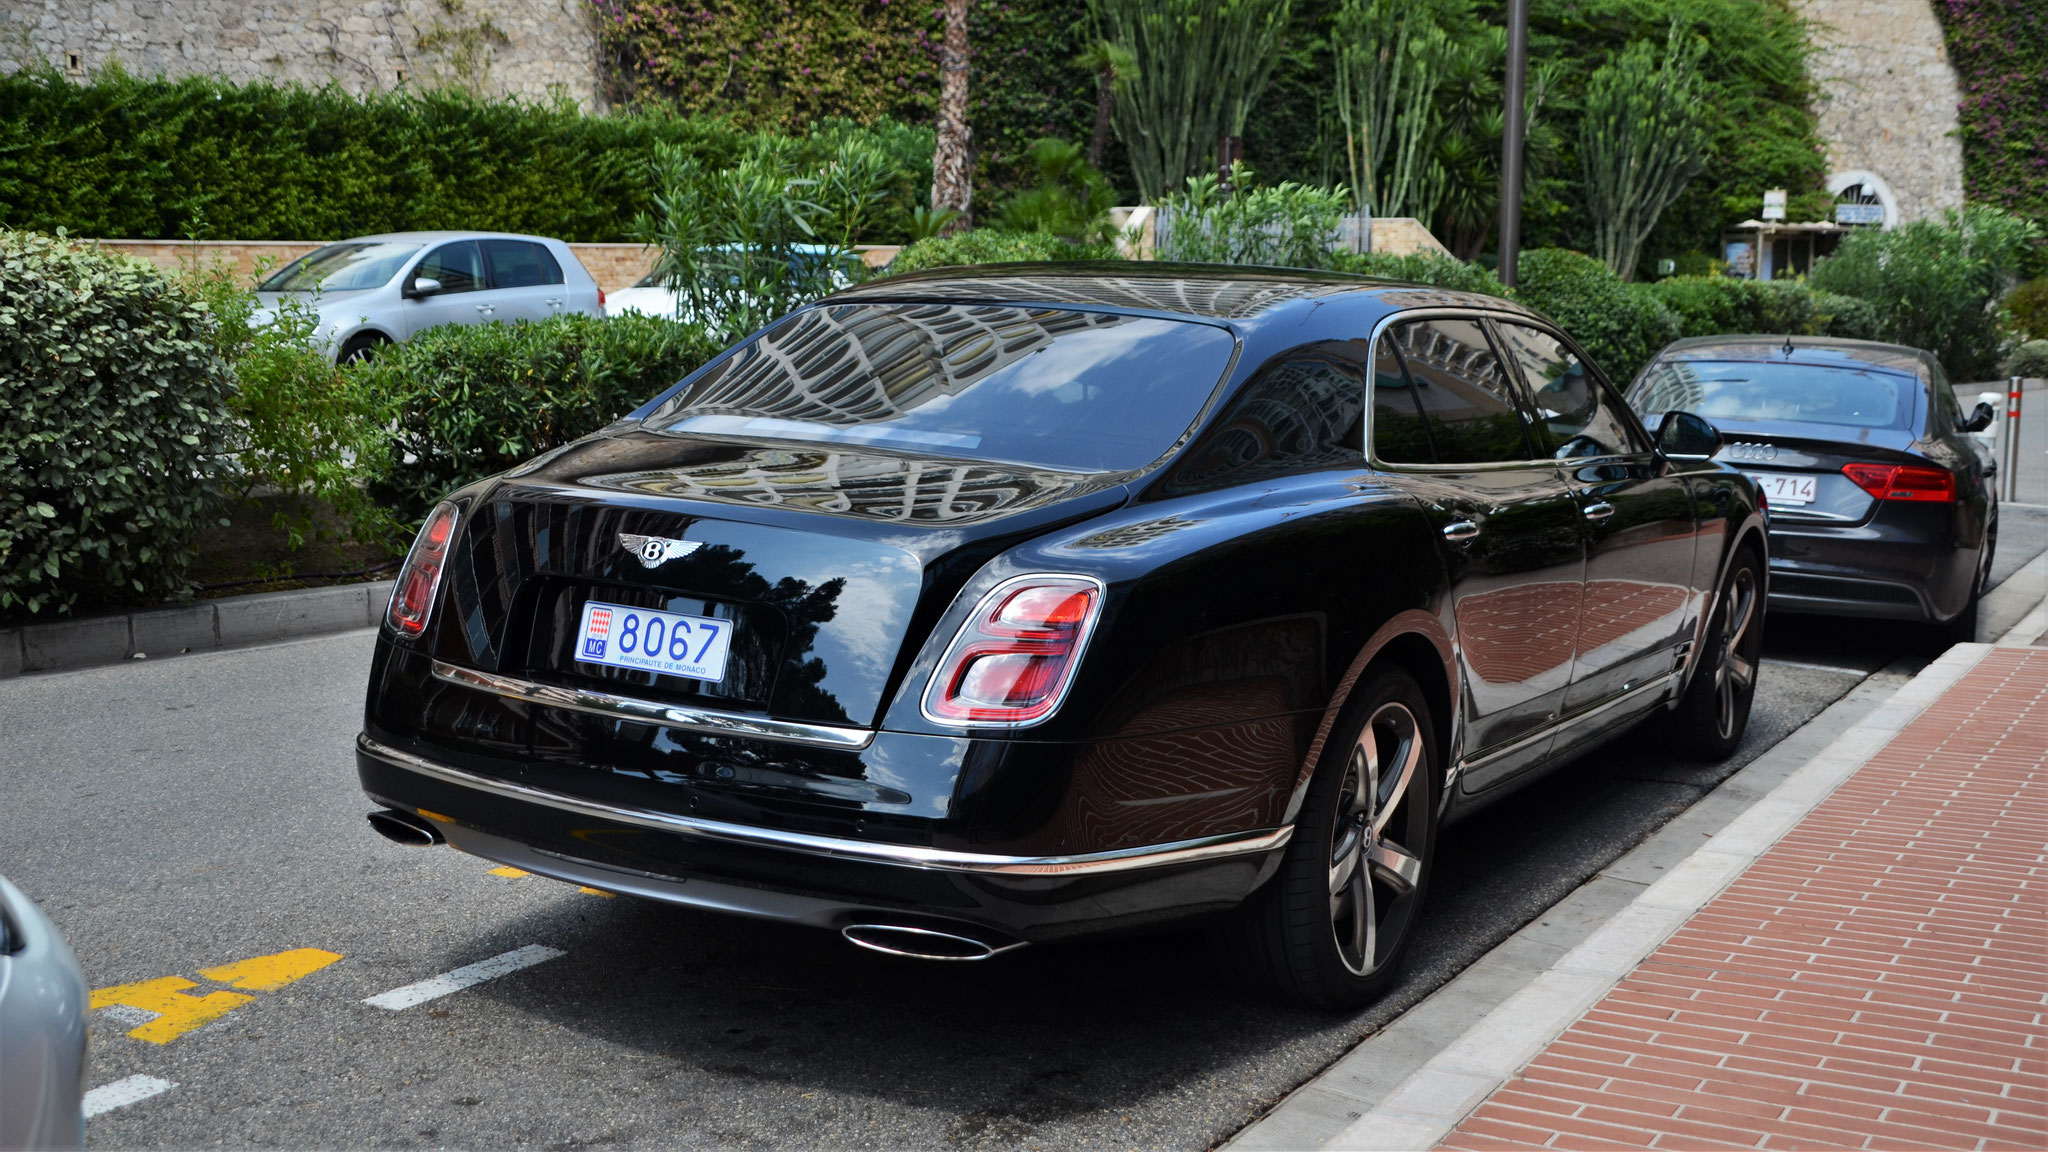 Bentley Mulsanne - 8067 (MC)